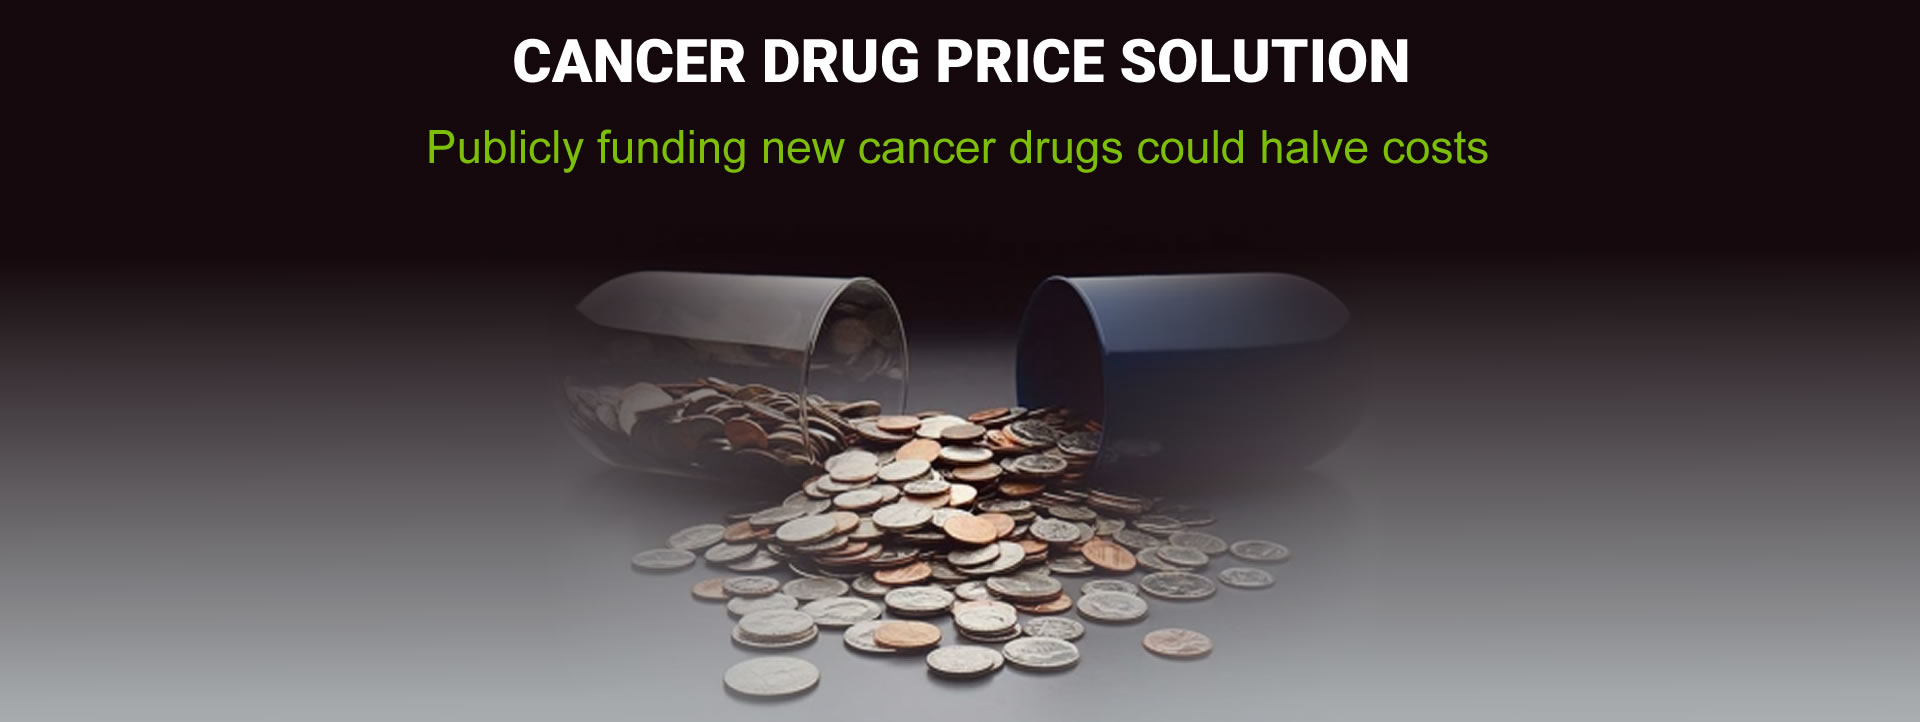 Cancer Drug Price Solution